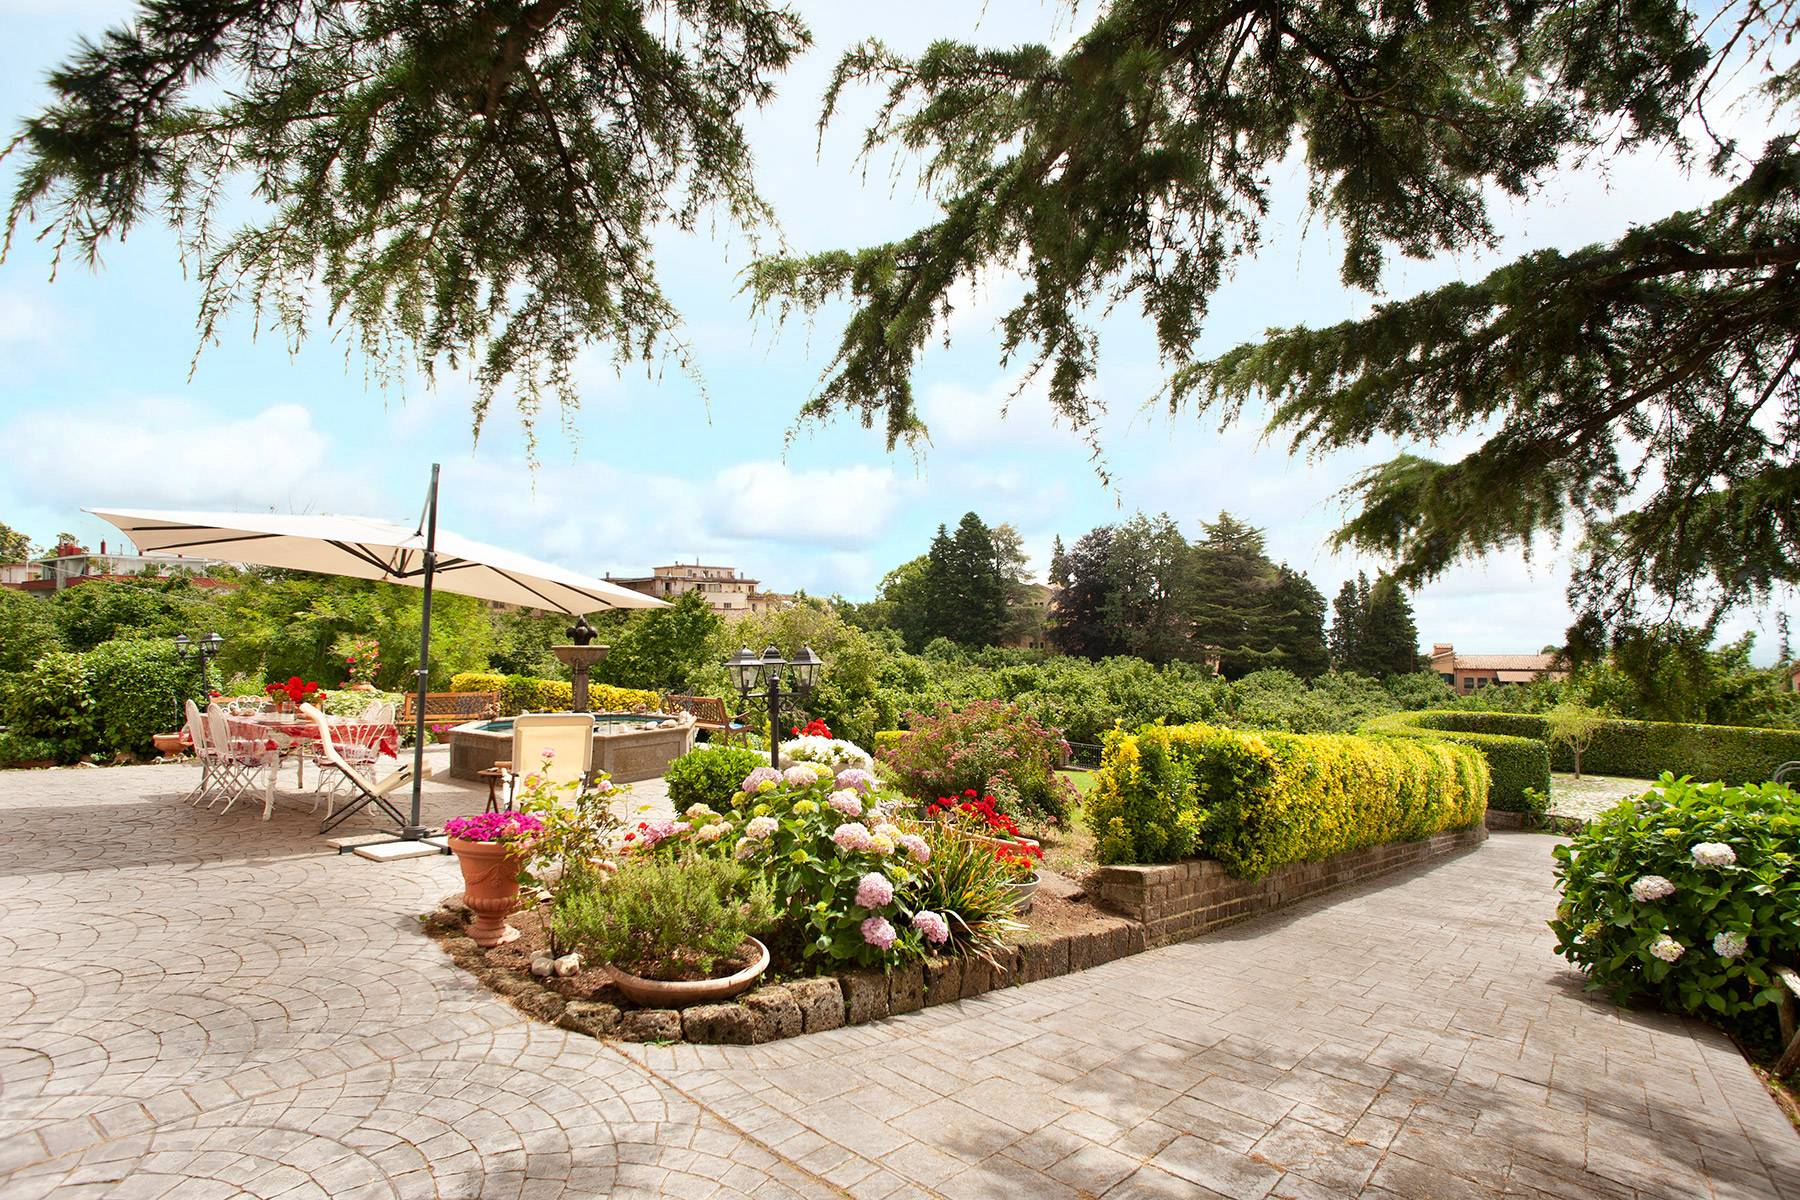 Villa in Vendita a Ronciglione: 5 locali, 500 mq - Foto 26